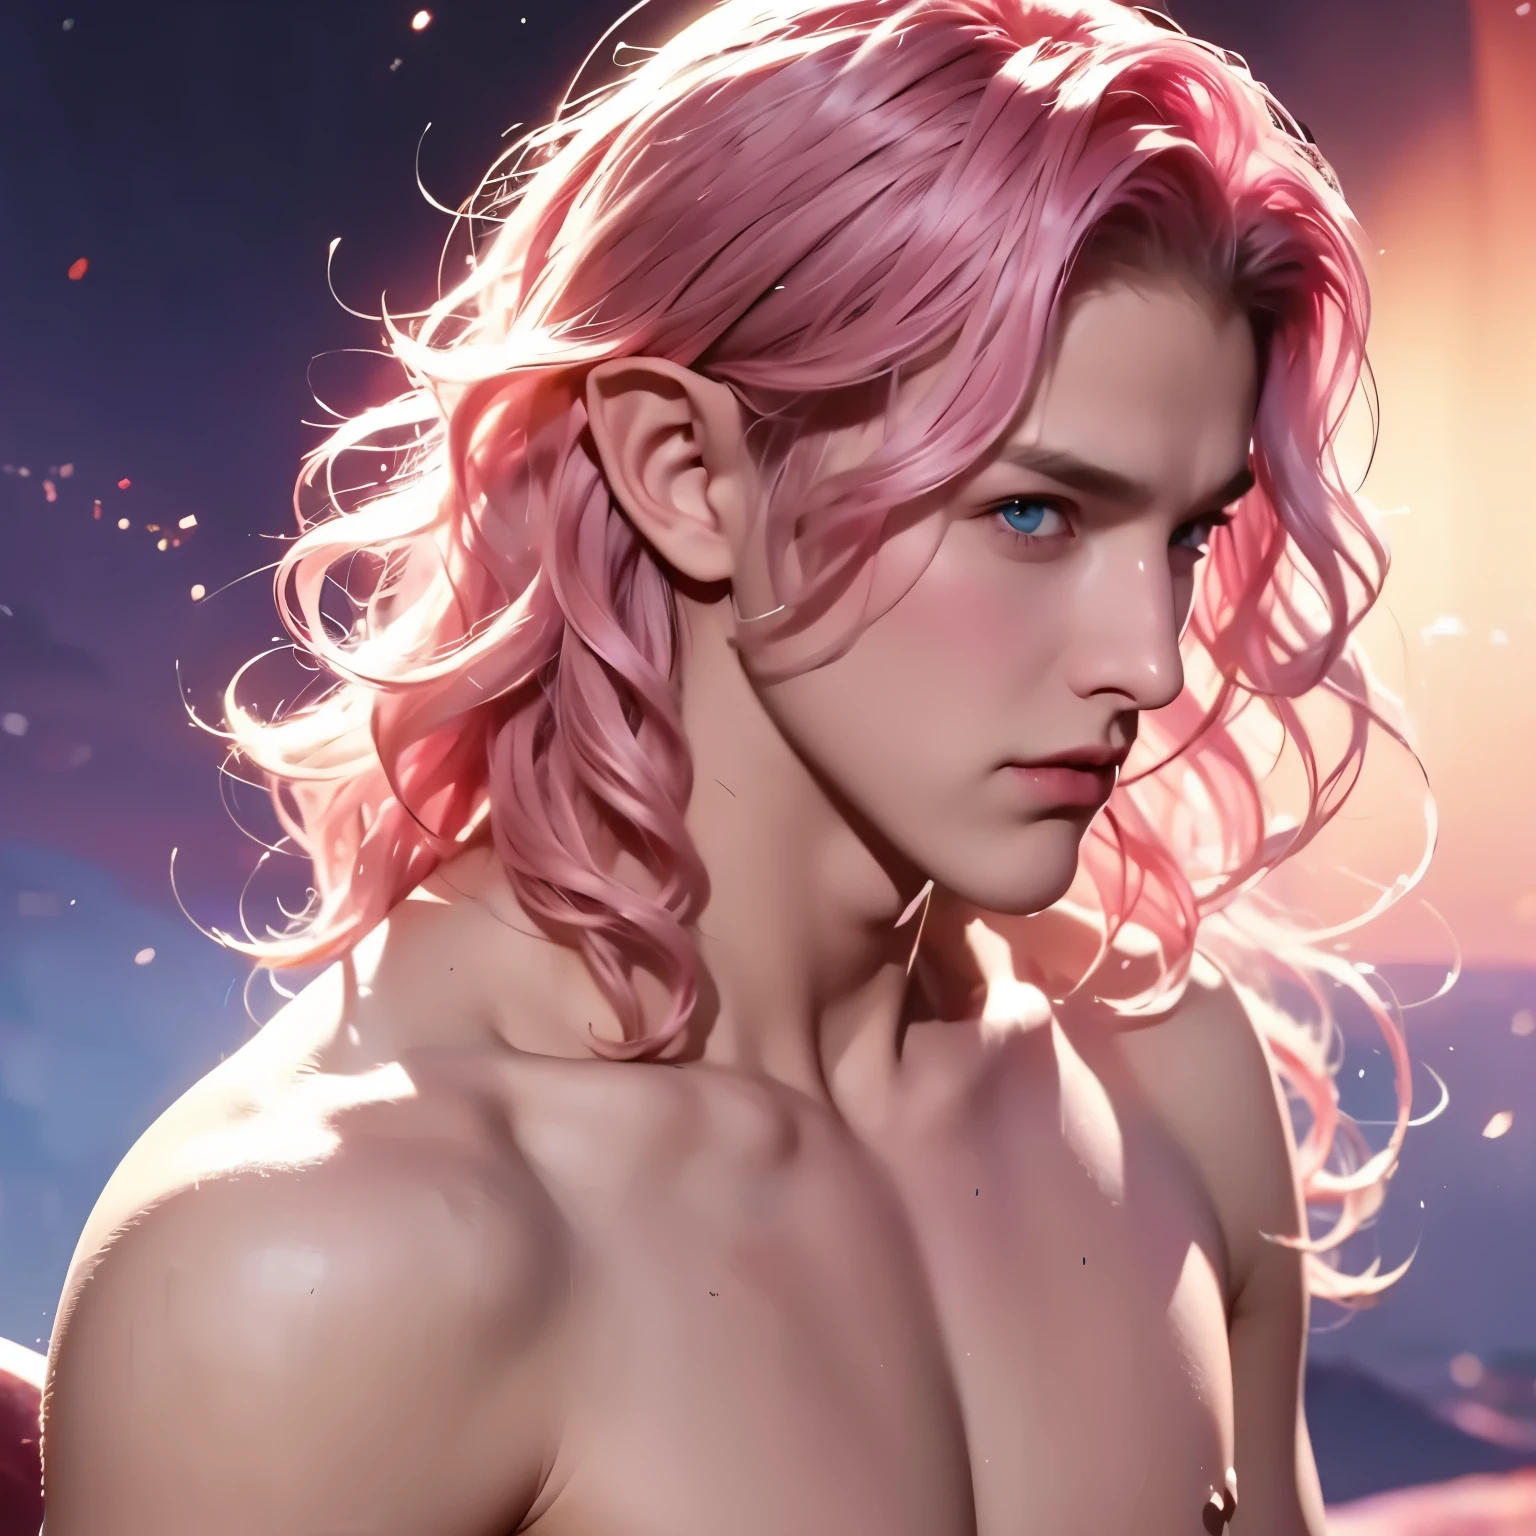 男人, 年轻的, 男生, 短波浪发, 粉红色头发, 蓝眼睛, 精灵, 赤膊, 中世纪背景